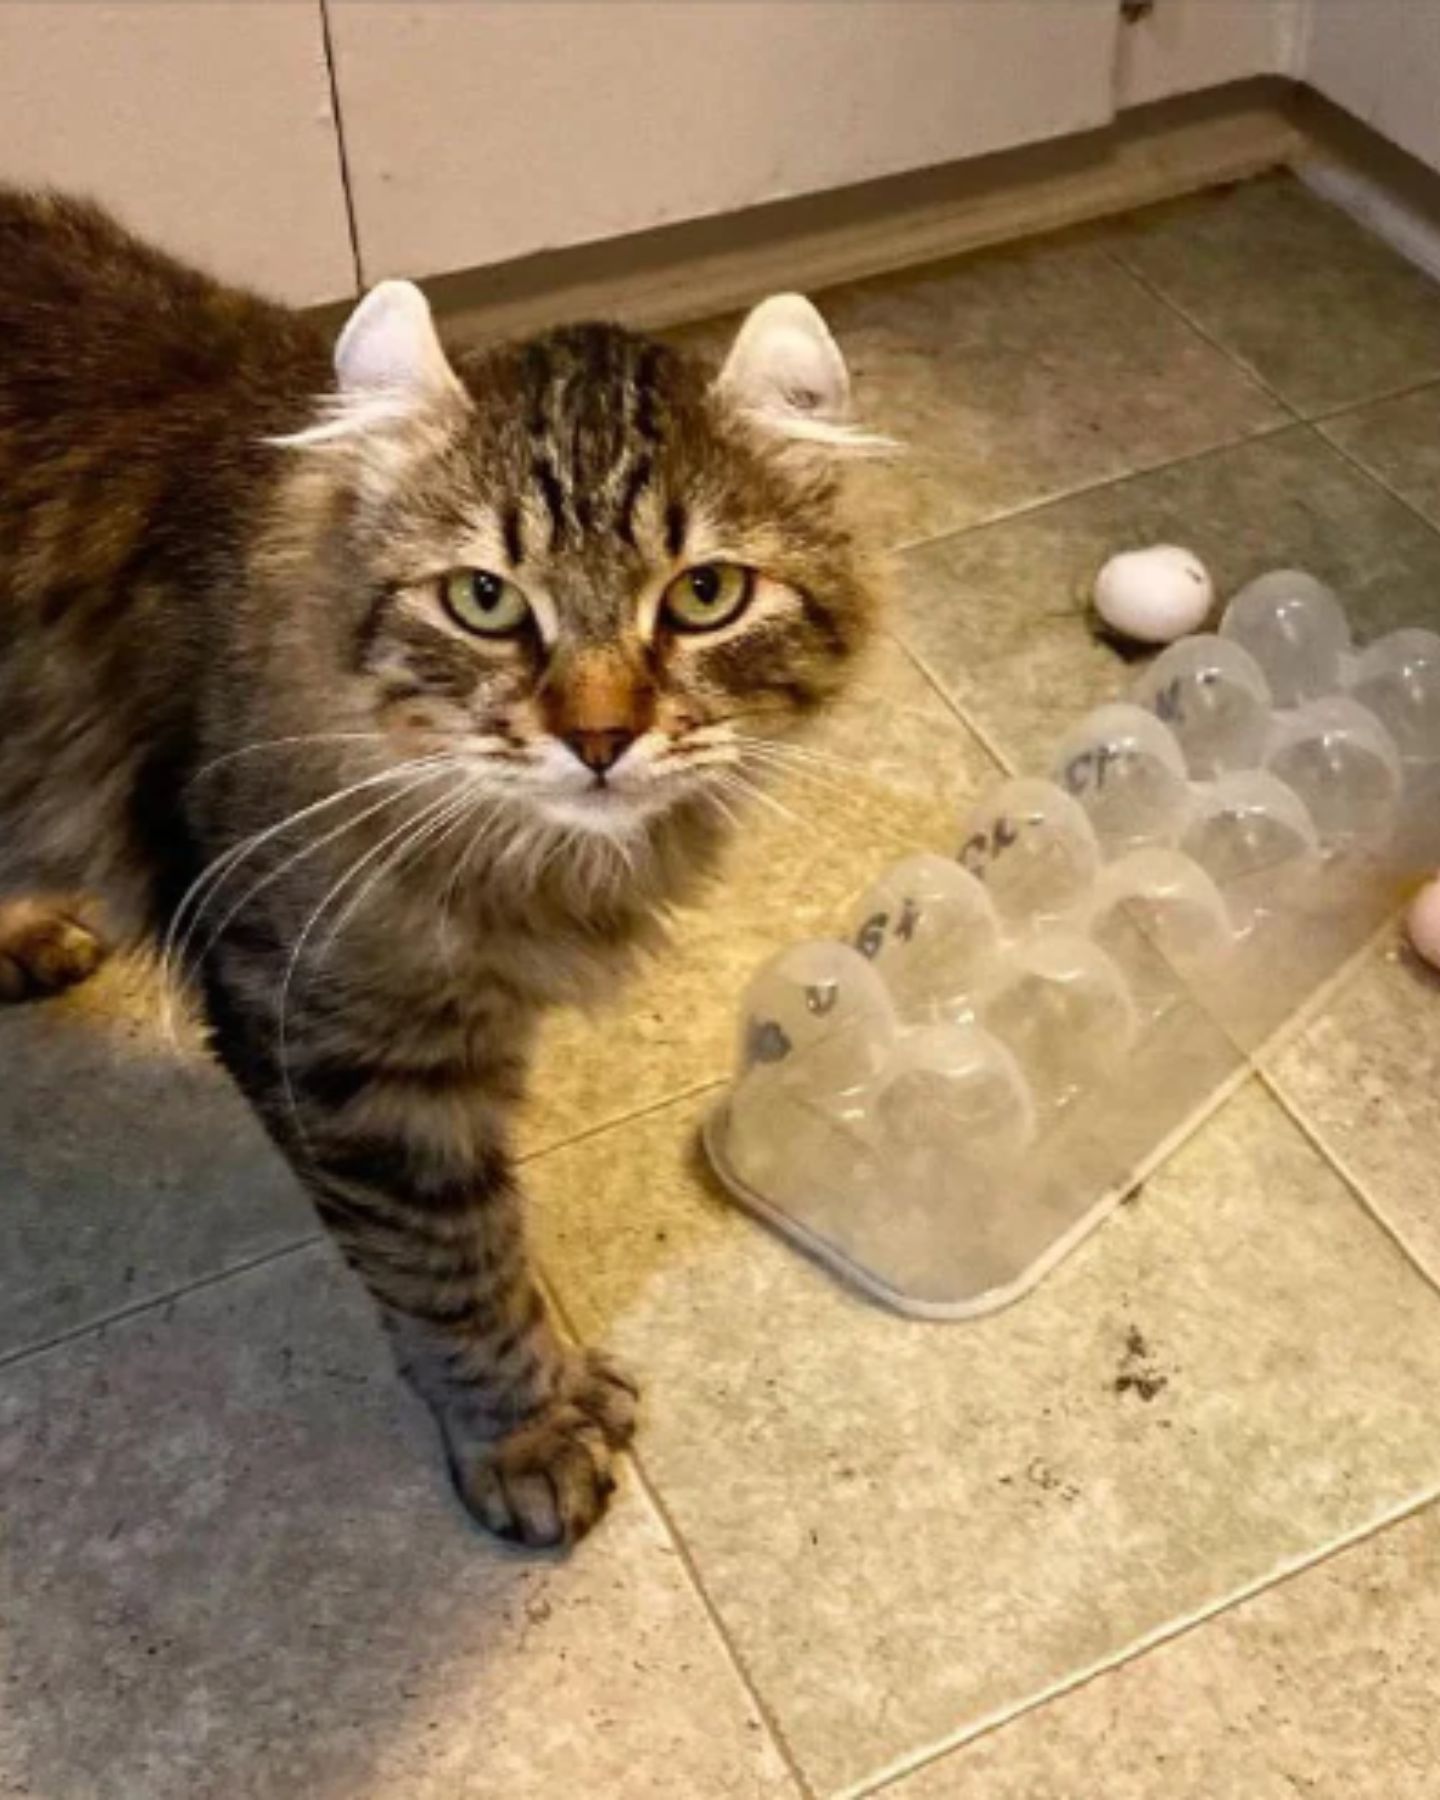 cat and broken eggs